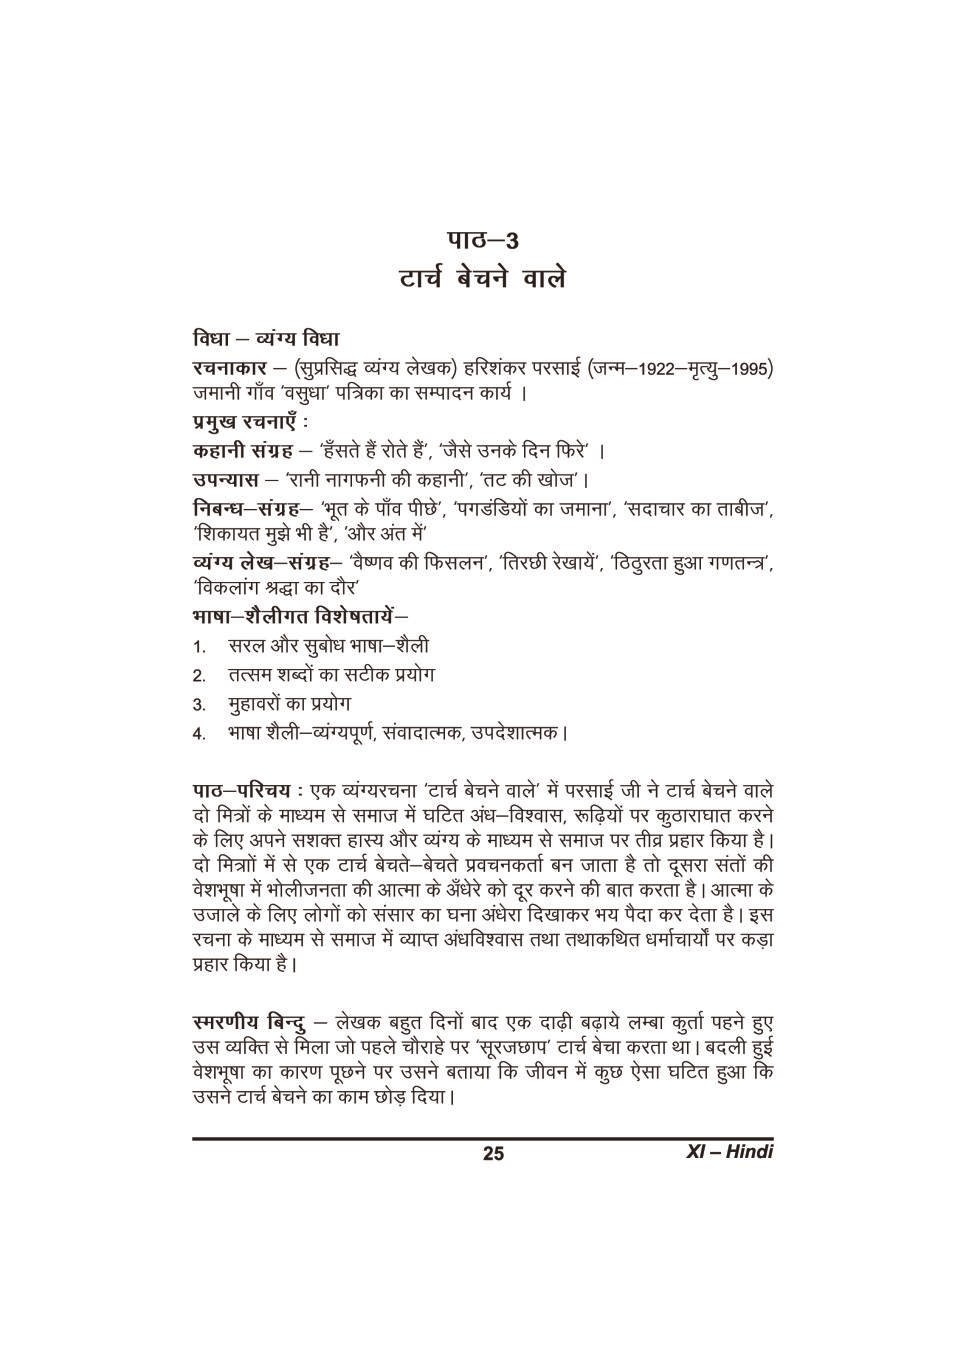 कक्षा 11 हिंदी के नोट्स - टॉर्च बेचने वाले - Page 1